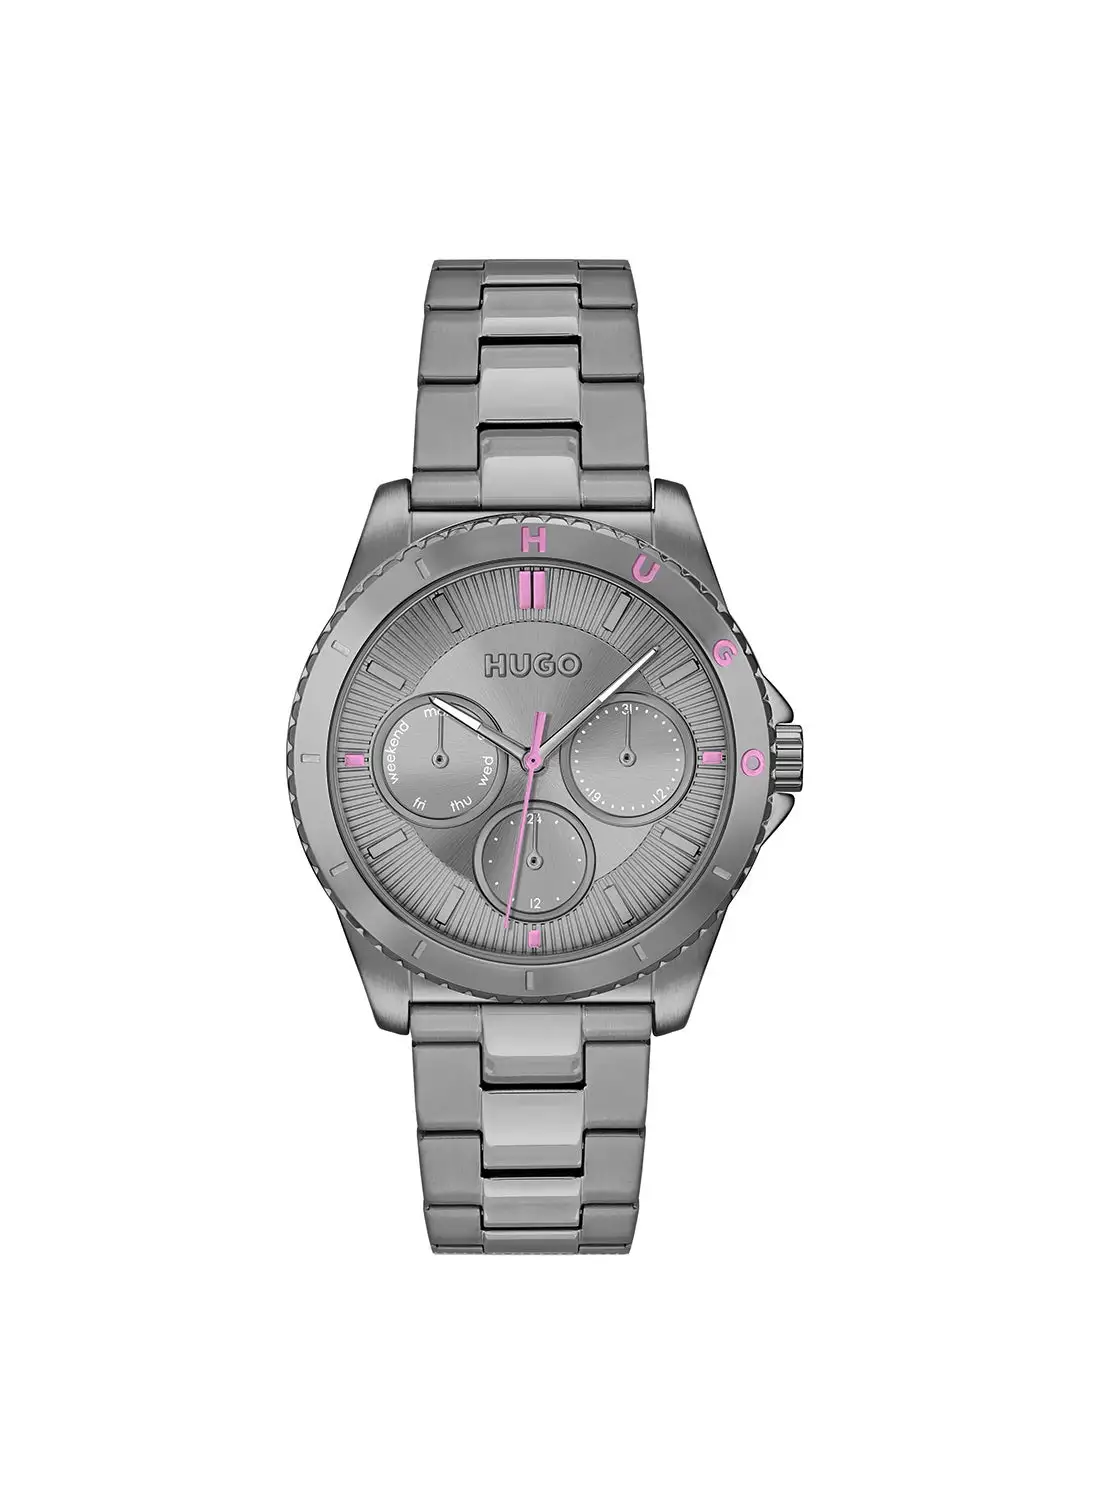 HUGO BOSS Women's Stainless Steel Wrist Watch 1540158